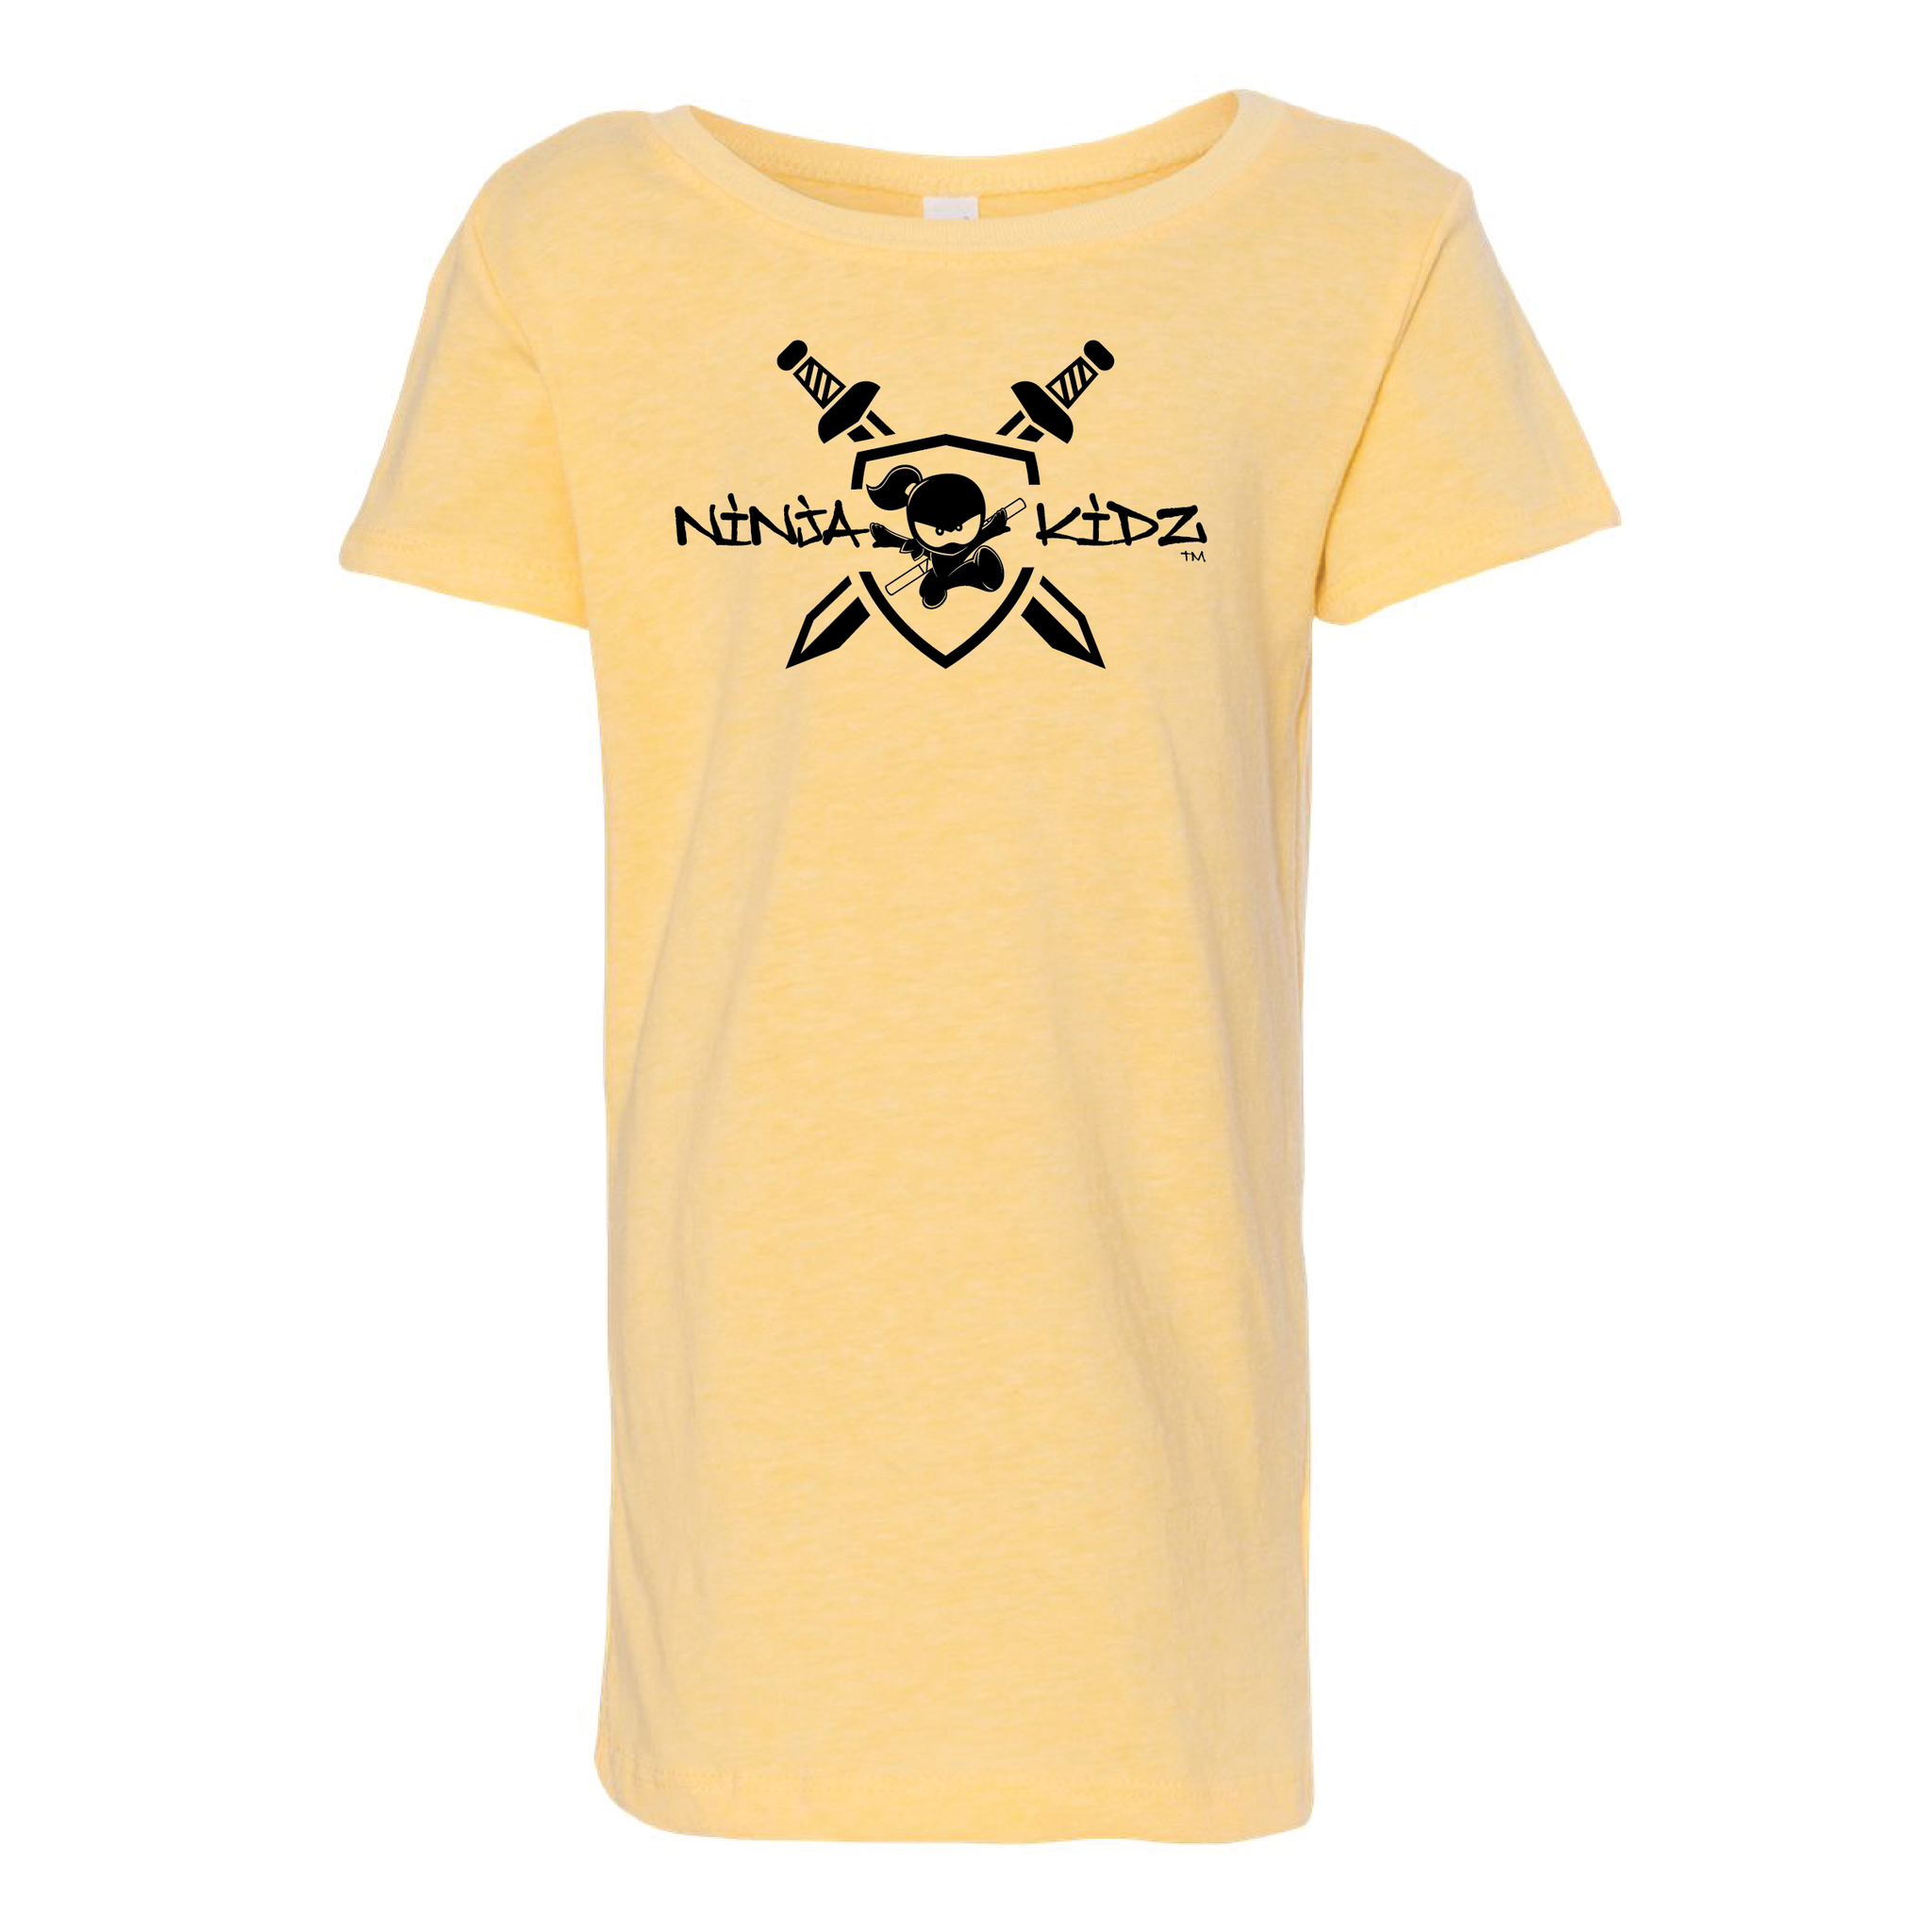 Ninja Kidz Shield Girl T Shirt 3.0 ©